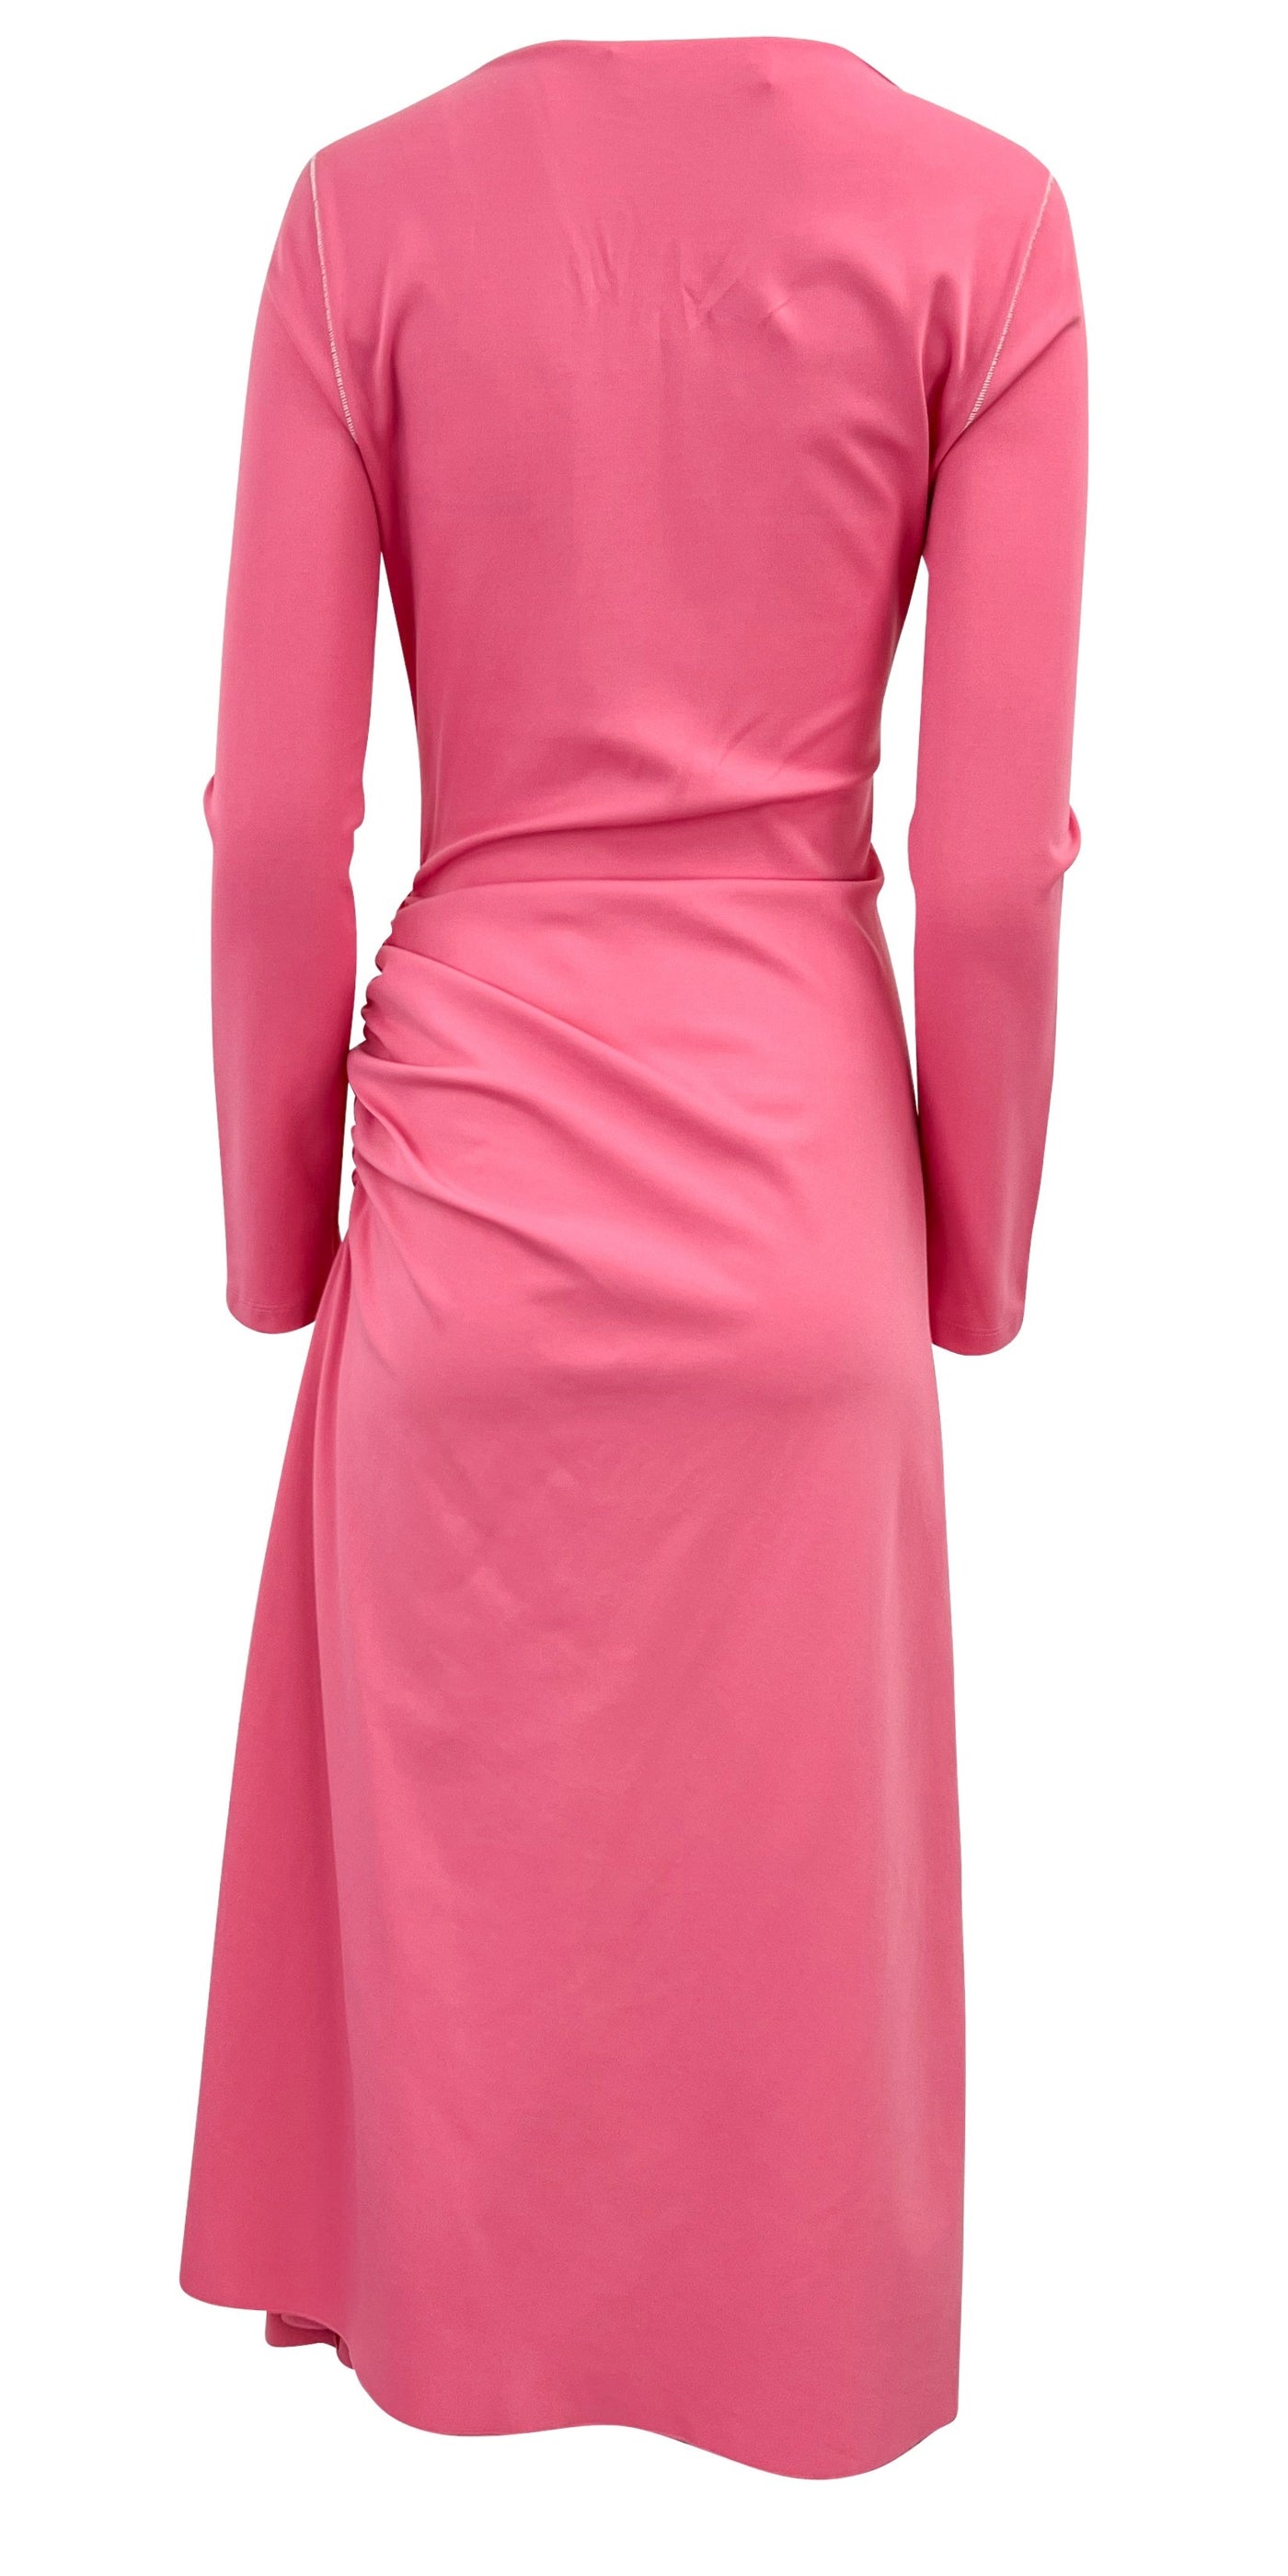 Marni Draped Dress in Pink - Discounts on Marni at UAL